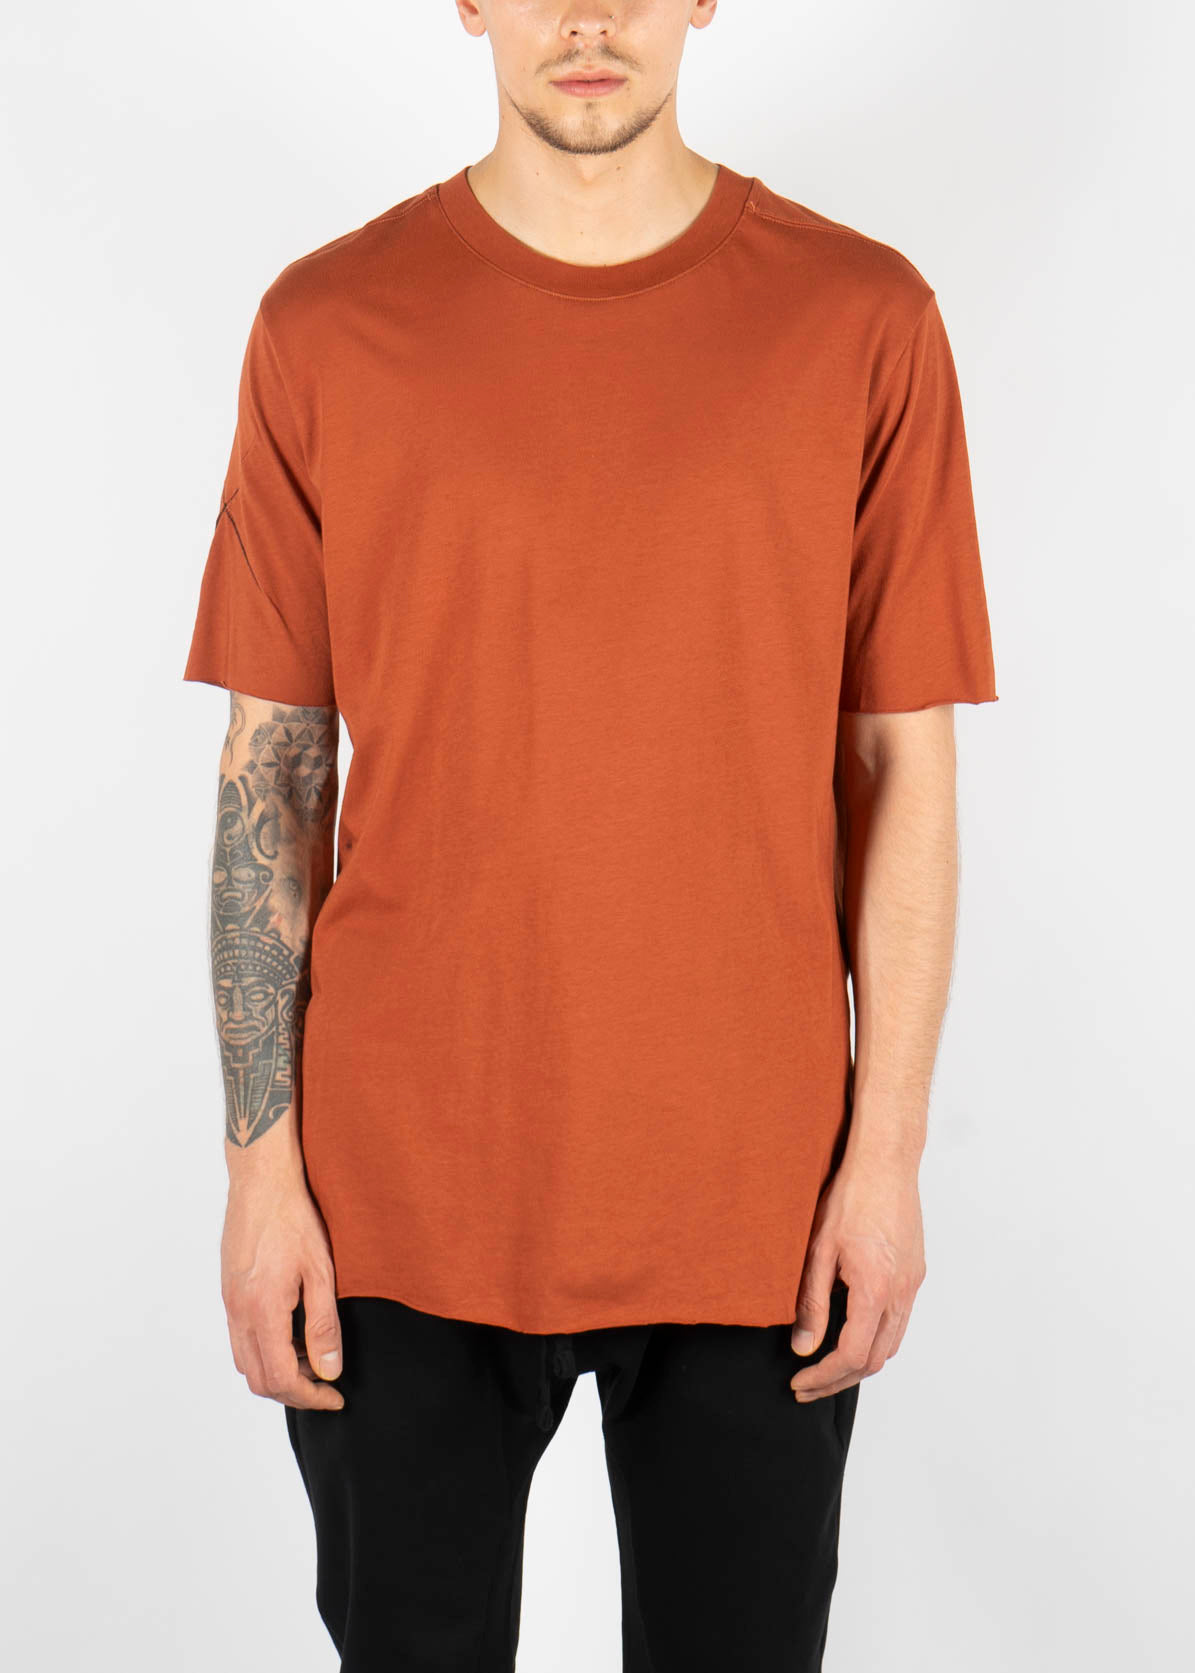 M TS 745 T-Shirt Rust Red